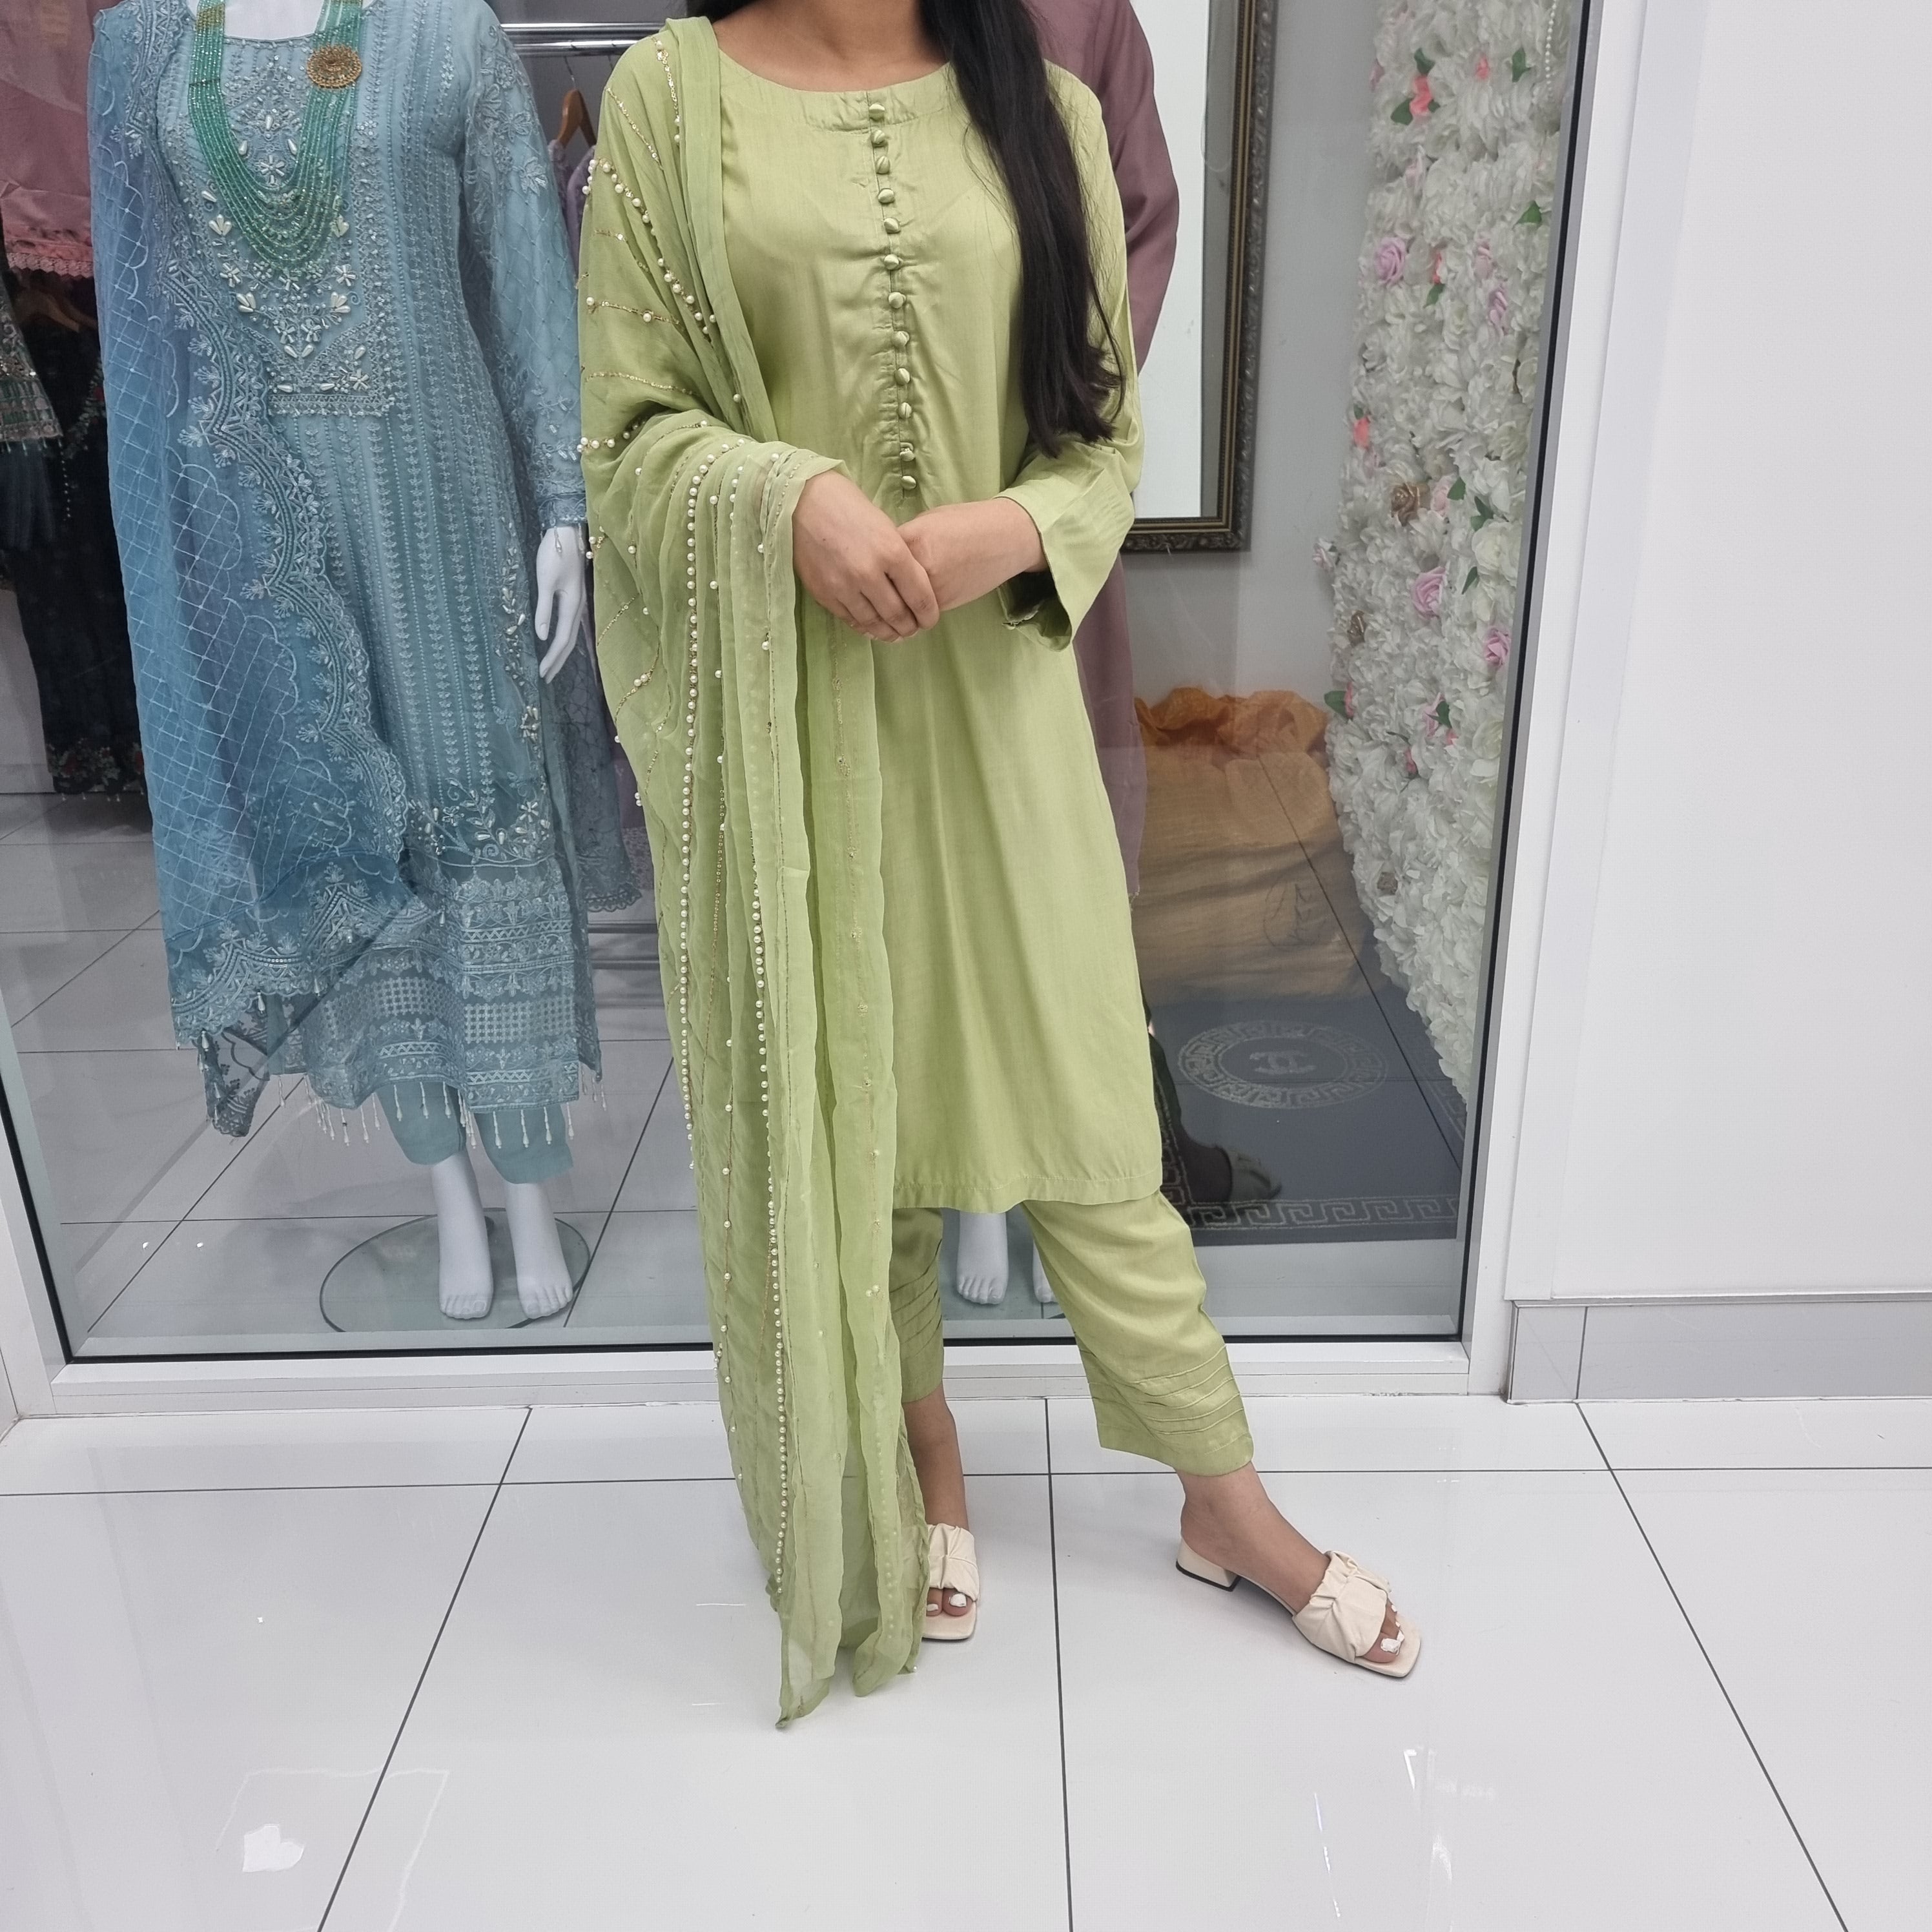 Sehriaraz Linen Pakistani Shalwar Kameez Salwar Suit Indian LG